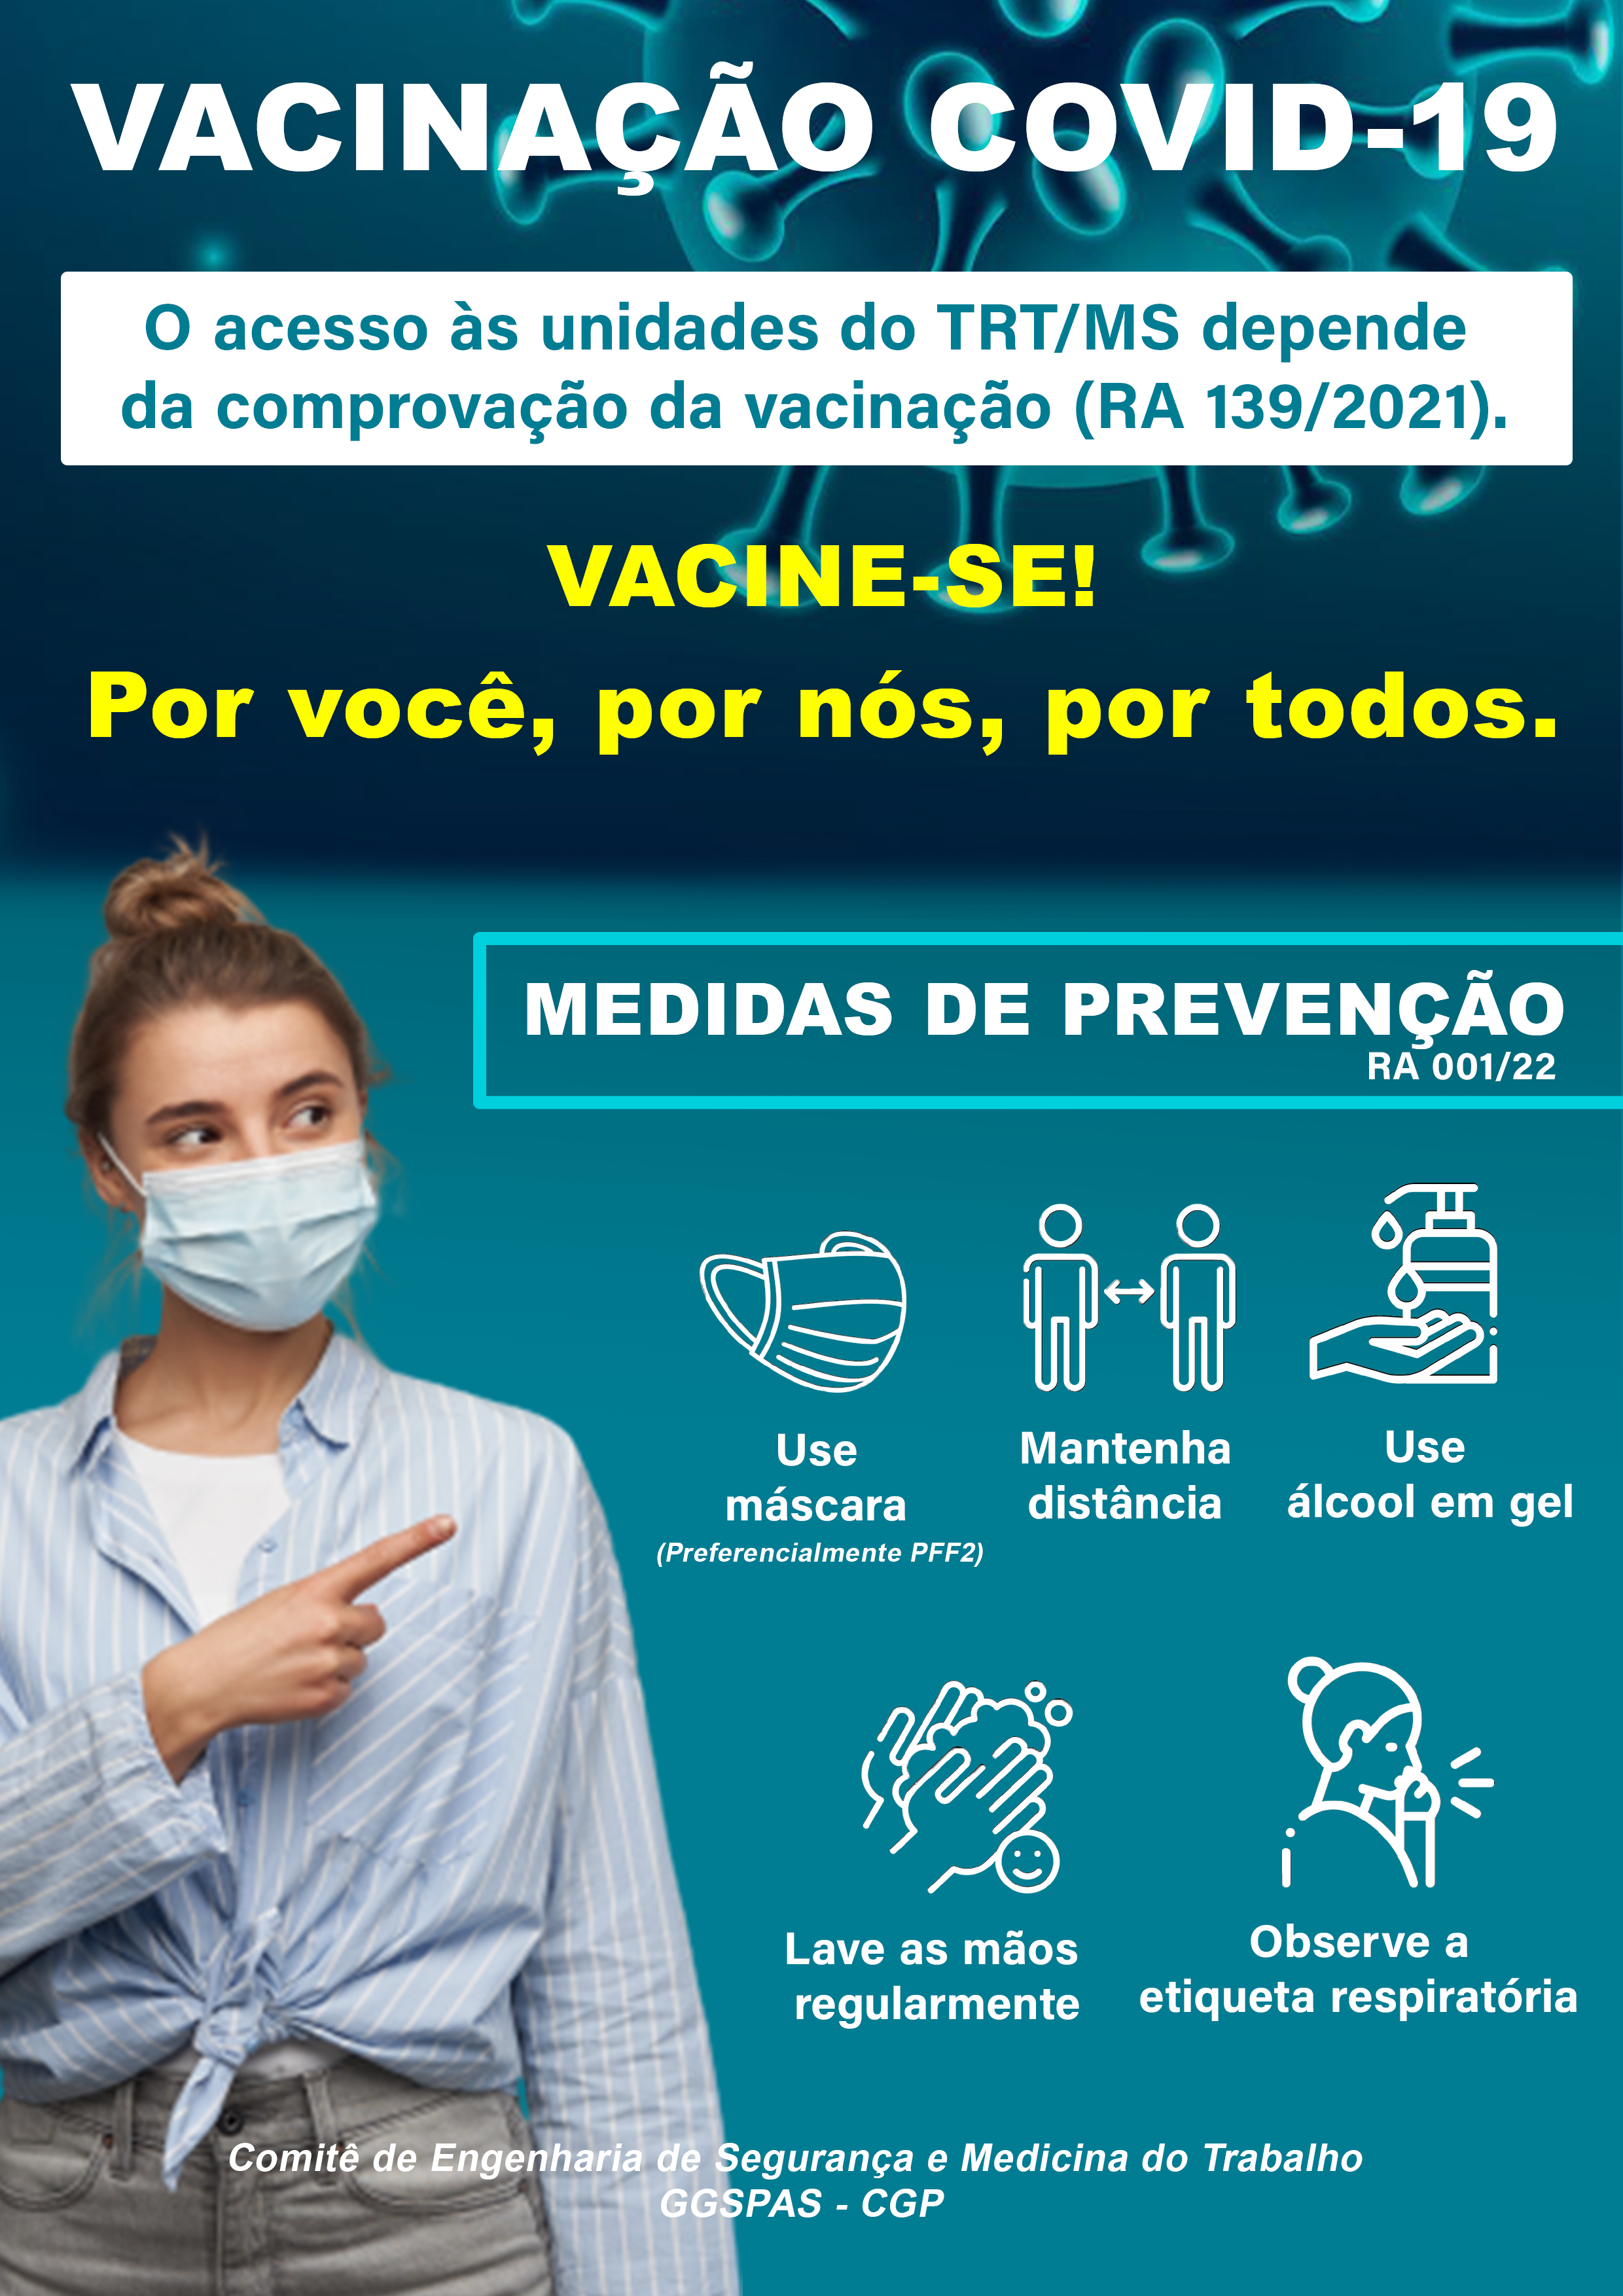 Informativo com medidas de prevenção RA 001 de 2022. Use máscara; mantenha distância; use álcool em gel; lave as mãos regularmente;  Observe a etiqueta respiratória